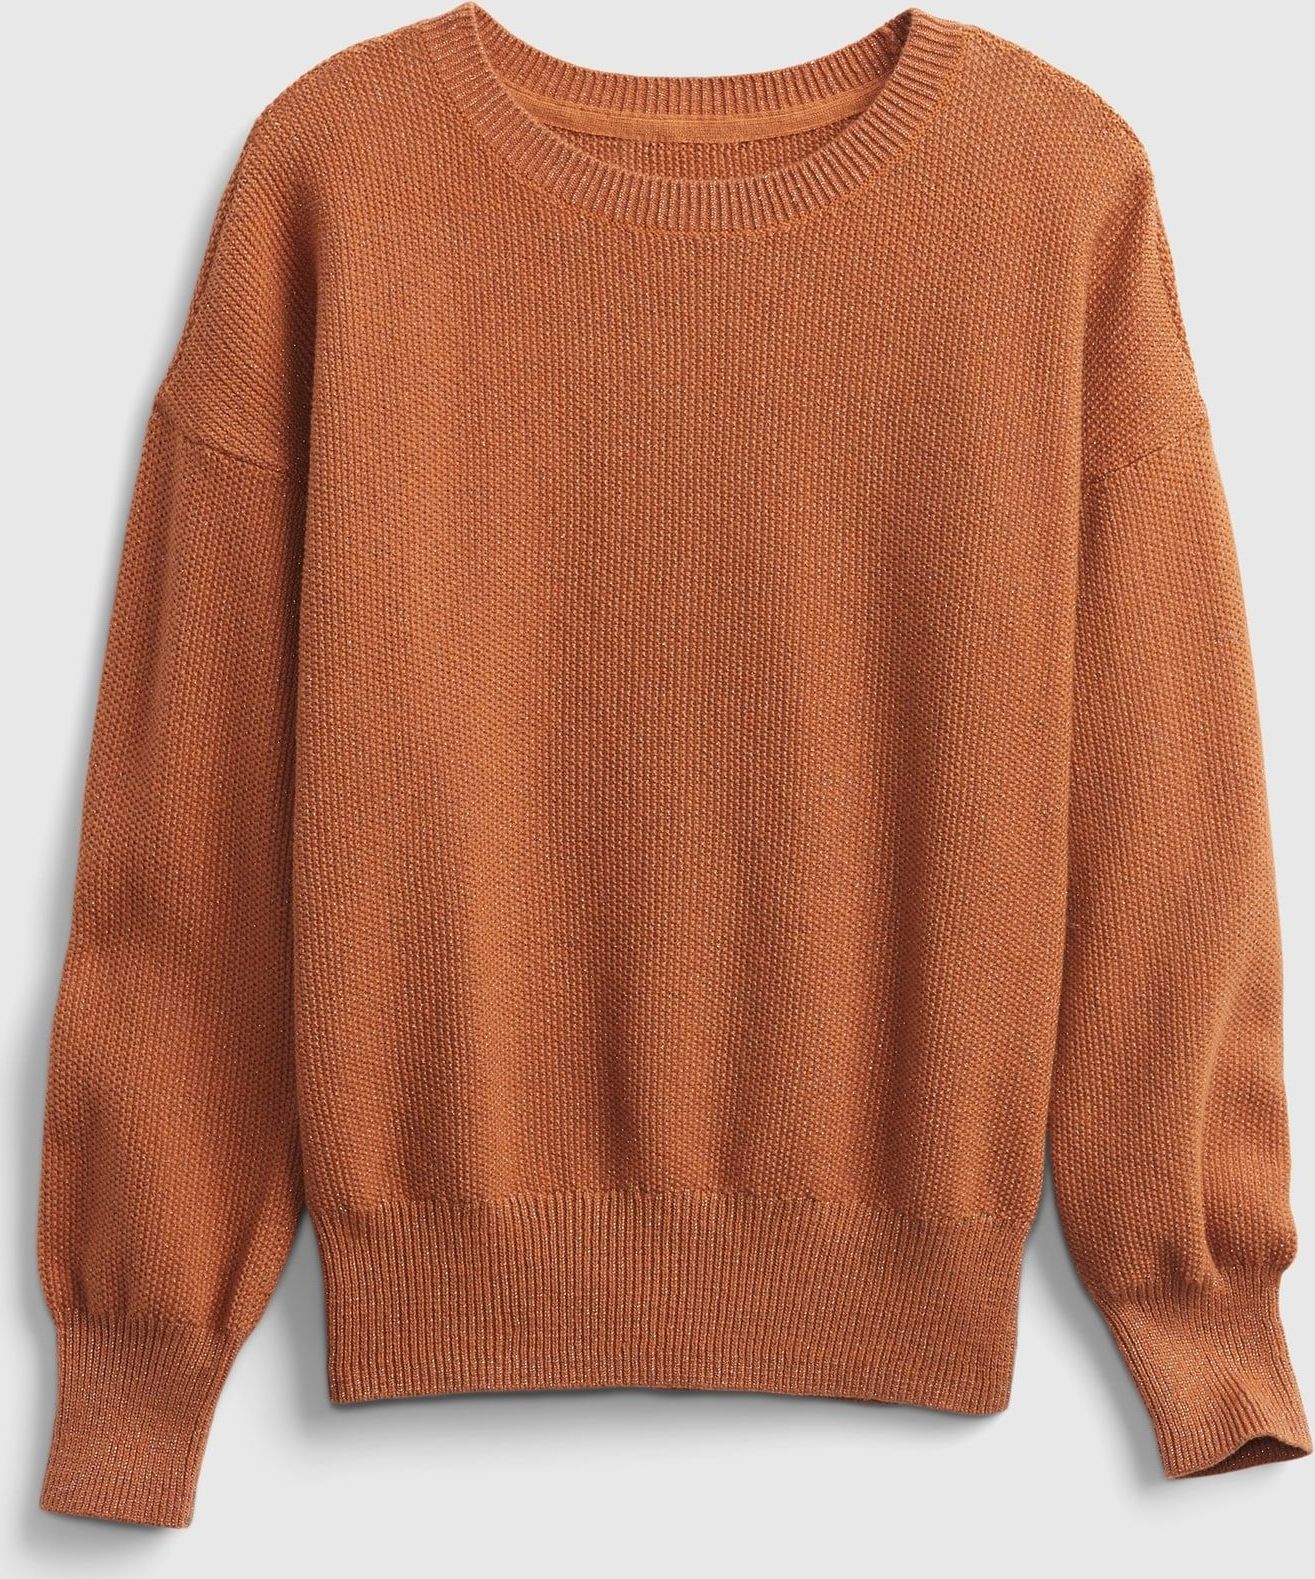 Hnědý holčičí svetr solid slouchy pullover - 98-110 - obrázek 1